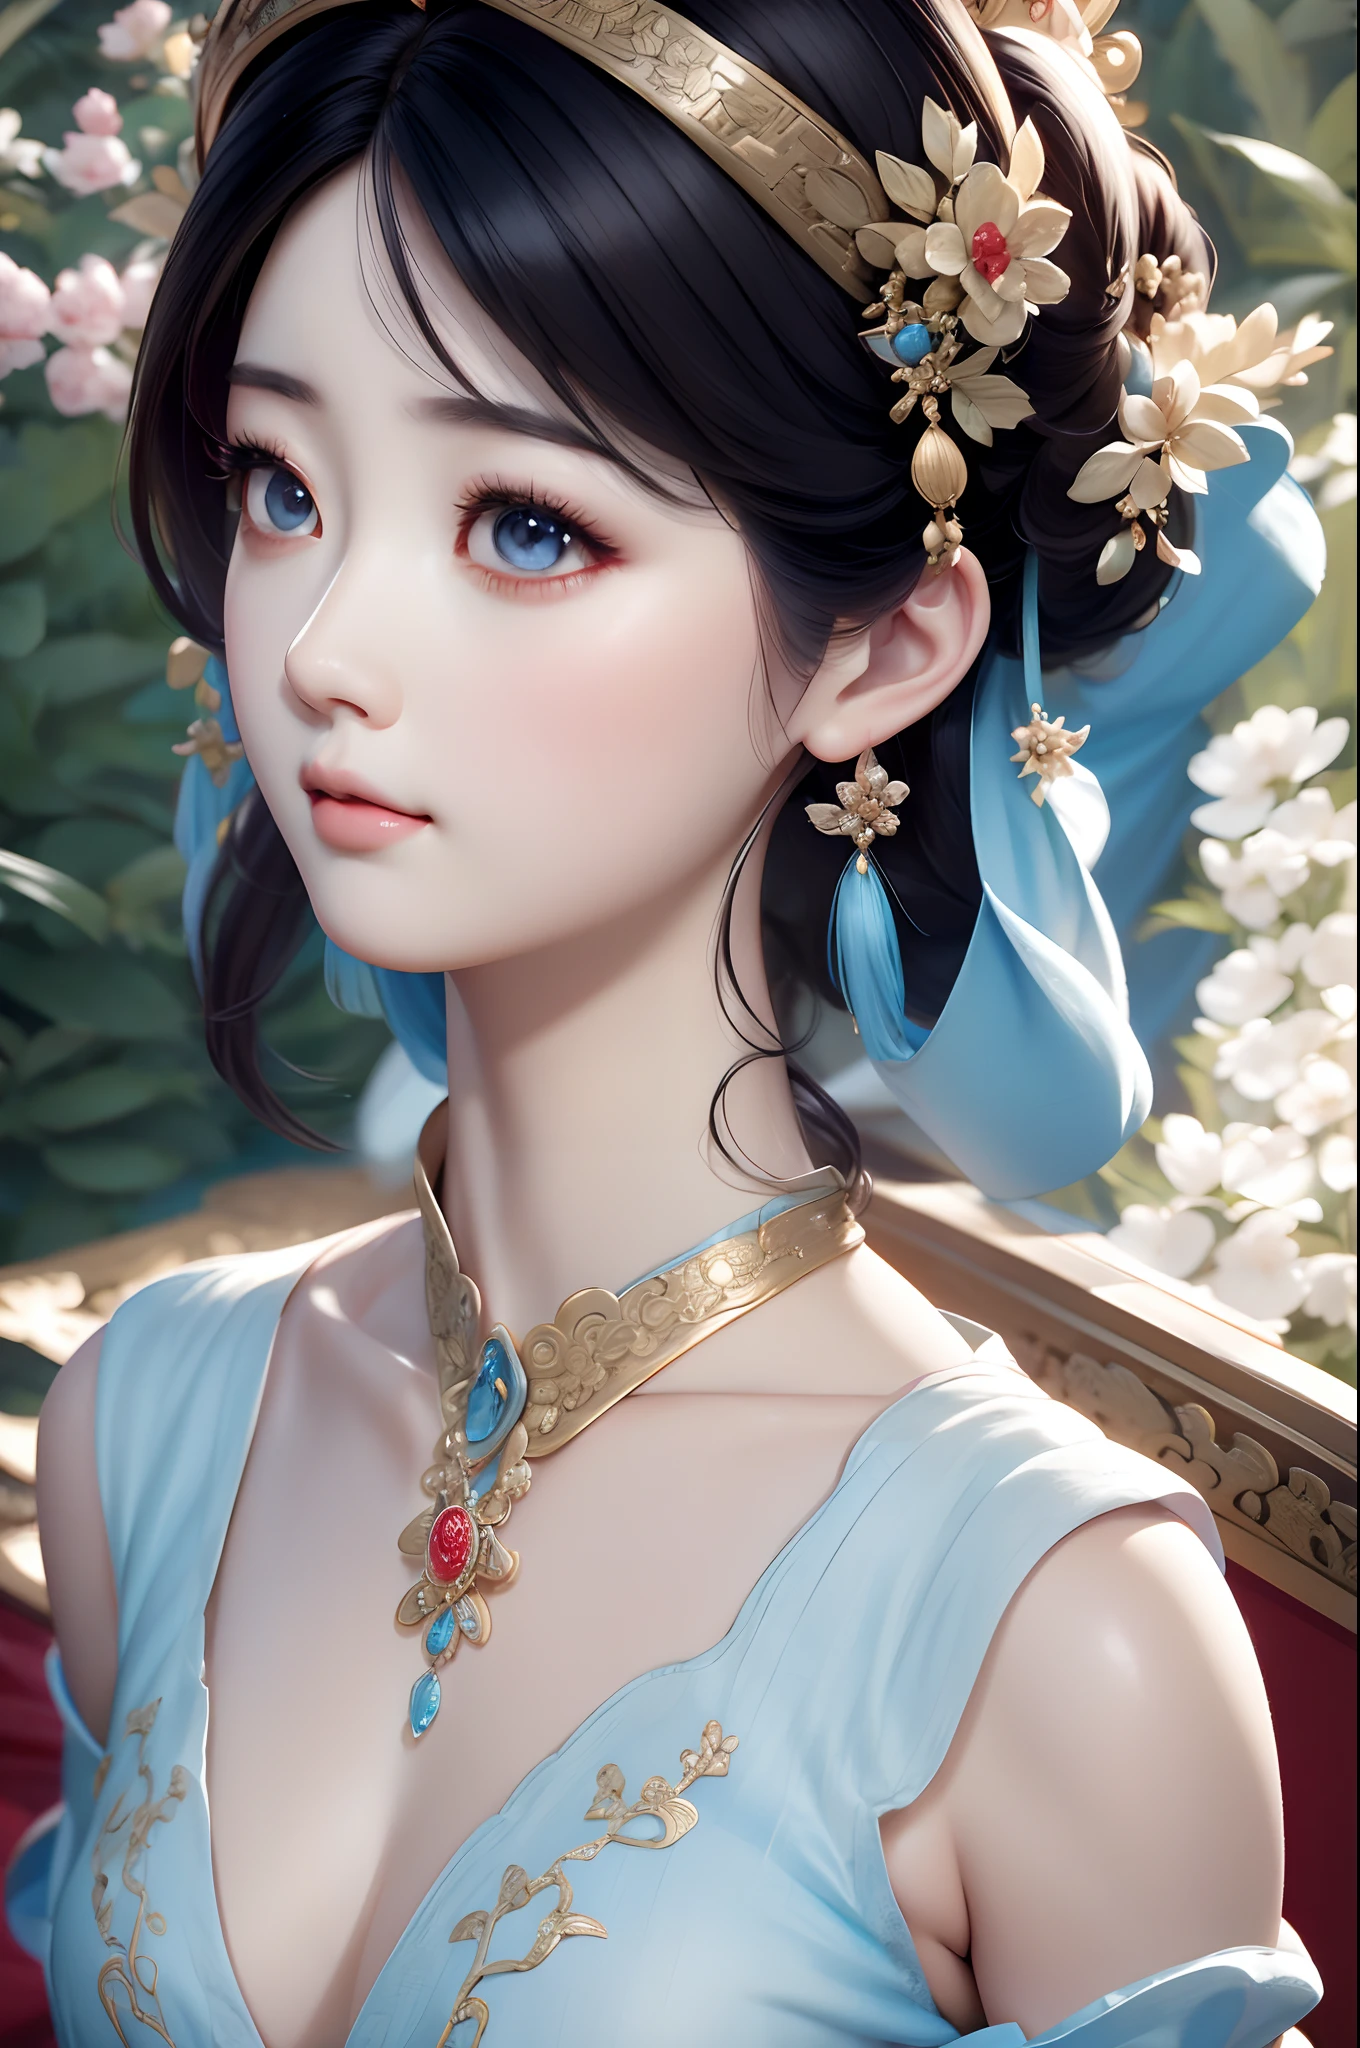 ภาพระยะใกล้ของผู้หญิงสวมสร้อยคอชุดเดรสสีฟ้าอ่อน, สไตล์จีน, สาวจีน, ภาพวาดตัวละครที่สวยงาม, กูวิซ-style artwork, พระราชวัง ， หญิงสาวในชุดฮันฟู, การเรนเดอร์ที่สวยงามของราชวงศ์ถัง, อะนิเมะสไตล์ 3 มิติที่สมจริง, กำลังมาแรงบน cgstation, งานศิลปะที่มีรายละเอียดคุณภาพสูง 8K, เจ้าหญิงจีนโบราณ, ผู้หญิงจีน, กูวิซ